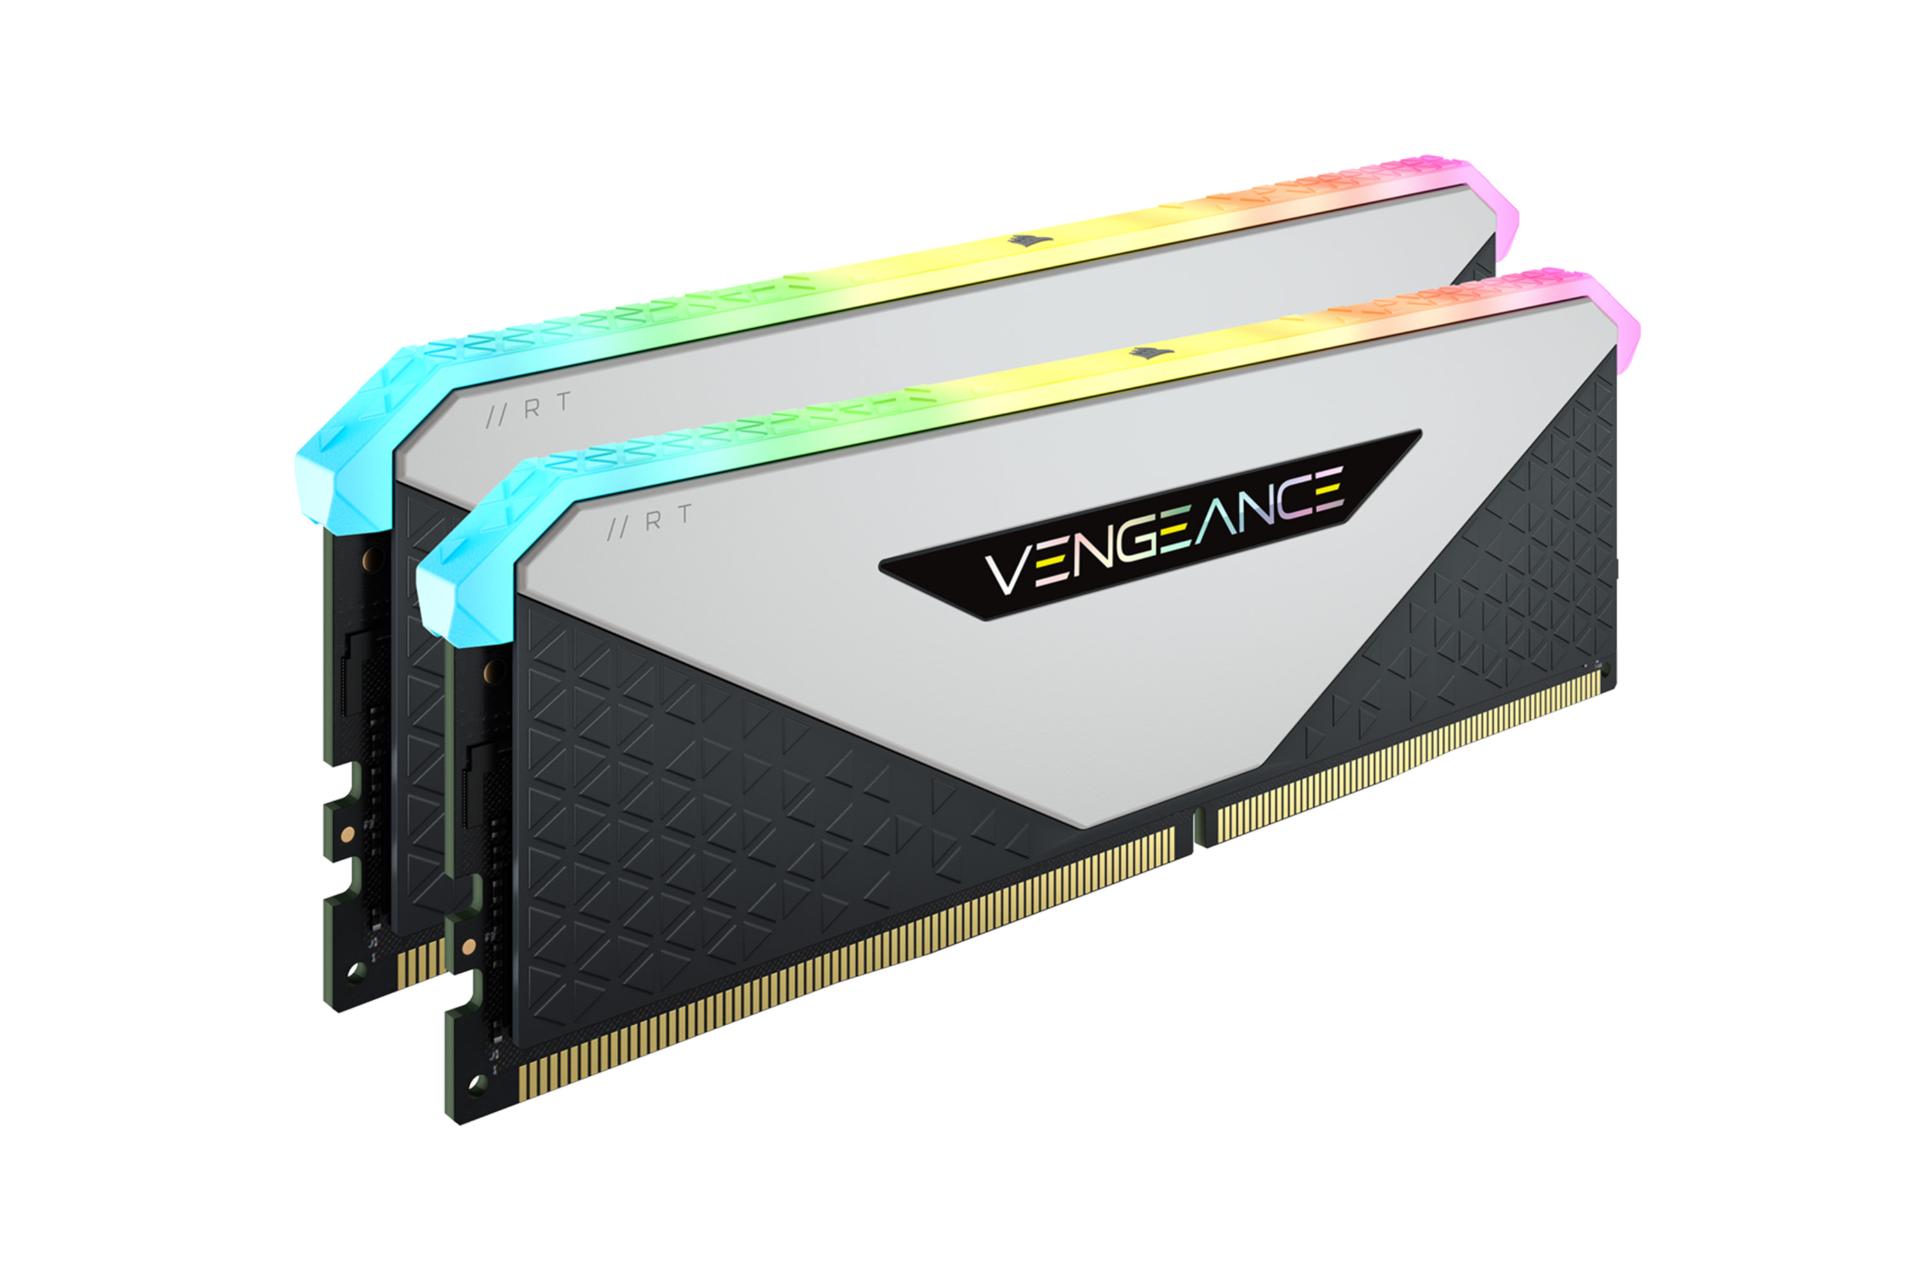  رم کورسیر VENGEANCE RGB RT ظرفیت 16 گیگابایت (2x8) از نوع DDR4-3600 نمای جانبی